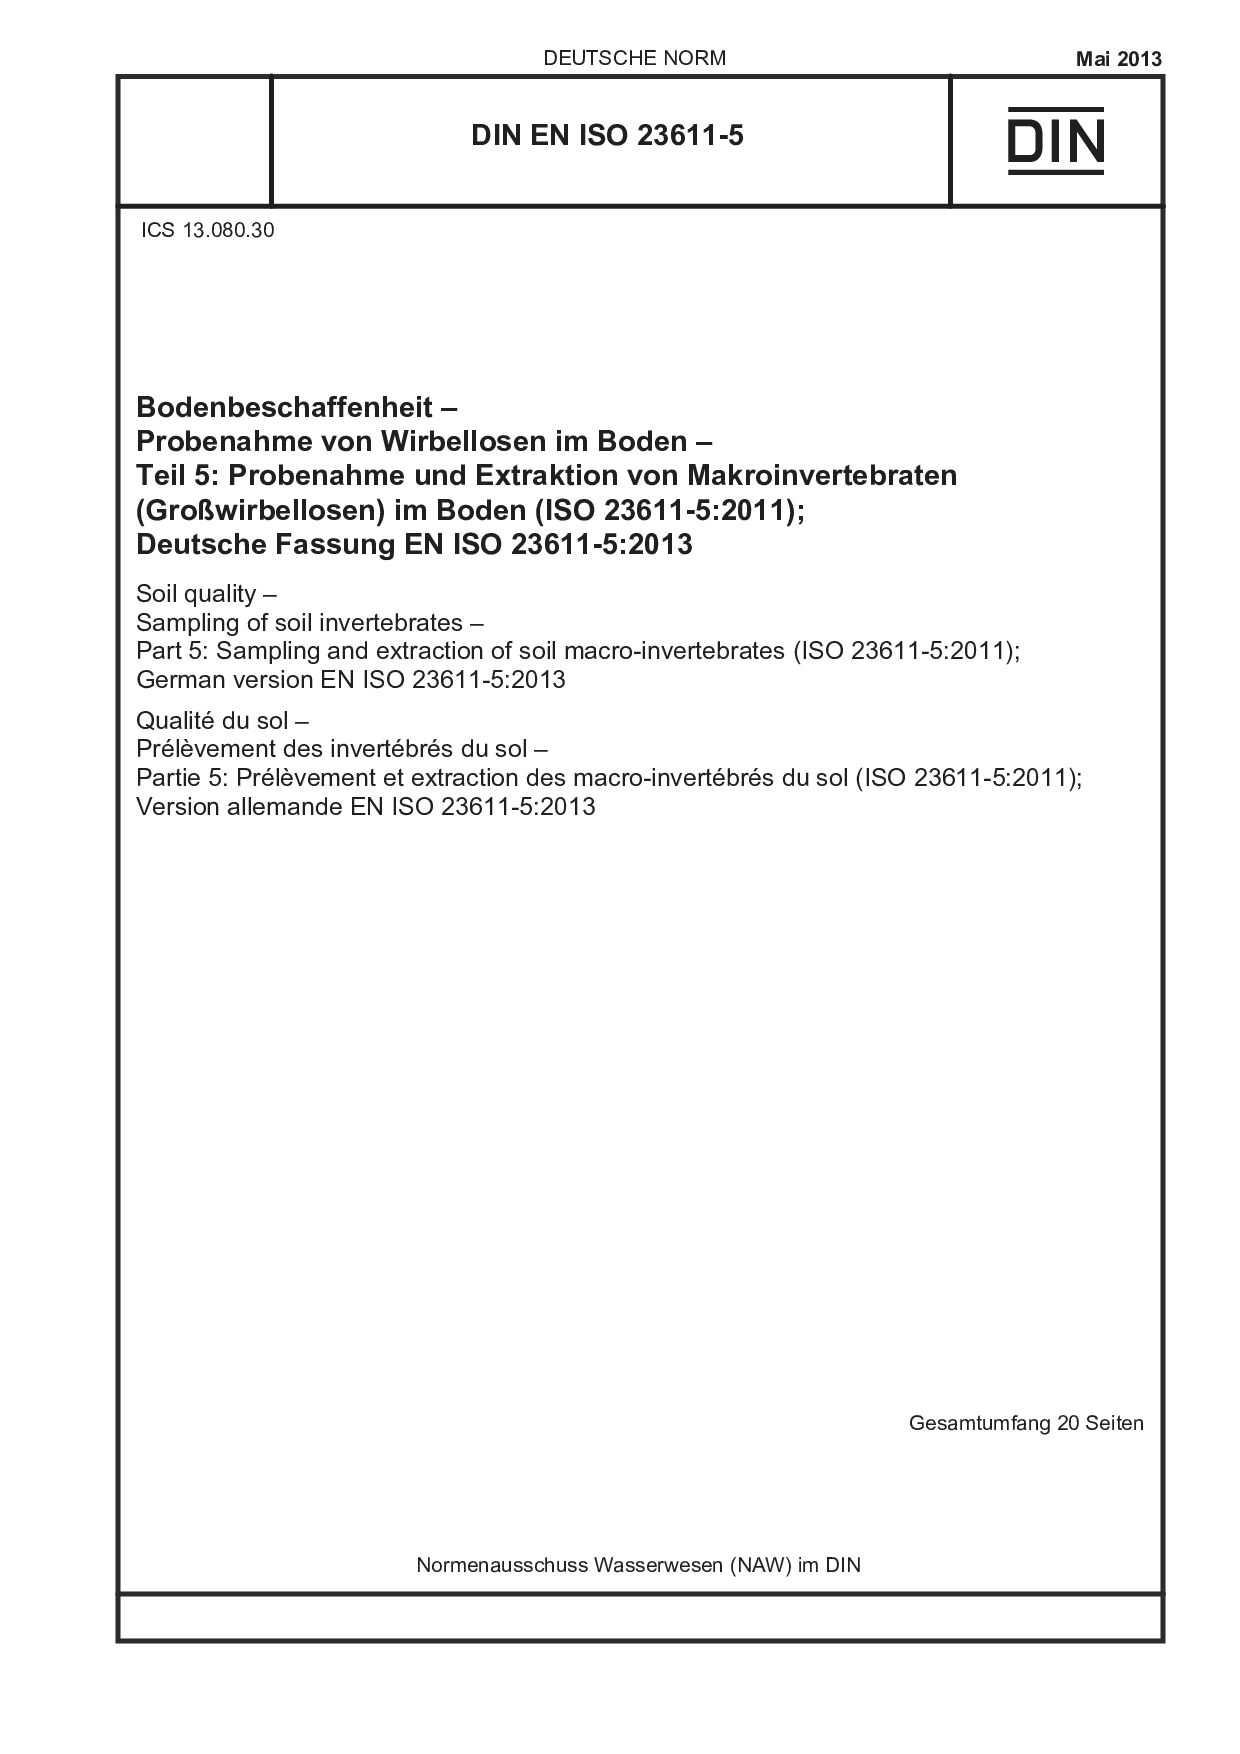 DIN EN ISO 23611-5:2013